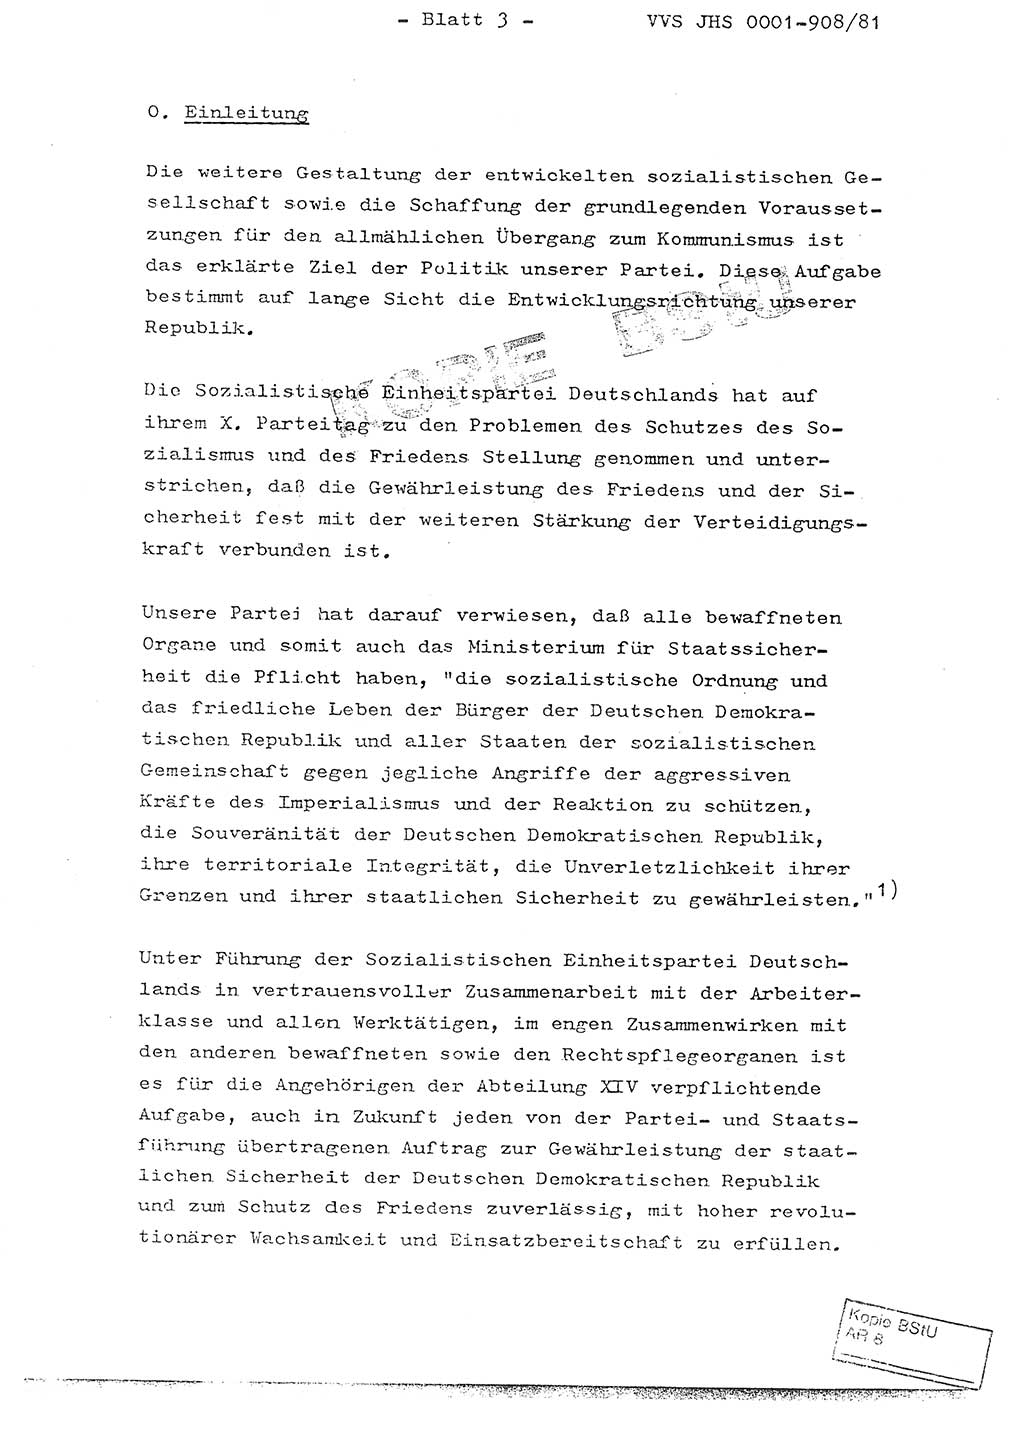 Fachschulabschlußarbeit Oberleutnant Wolfgang Wittmann (Abt. ⅩⅣ), Ministerium für Staatssicherheit (MfS) [Deutsche Demokratische Republik (DDR)], Juristische Hochschule (JHS), Vertrauliche Verschlußsache (VVS) o001-908/82, Potsdam 1982, Blatt 3 (FS-Abschl.-Arb. MfS DDR JHS VVS o001-908/82 1982, Bl. 3)